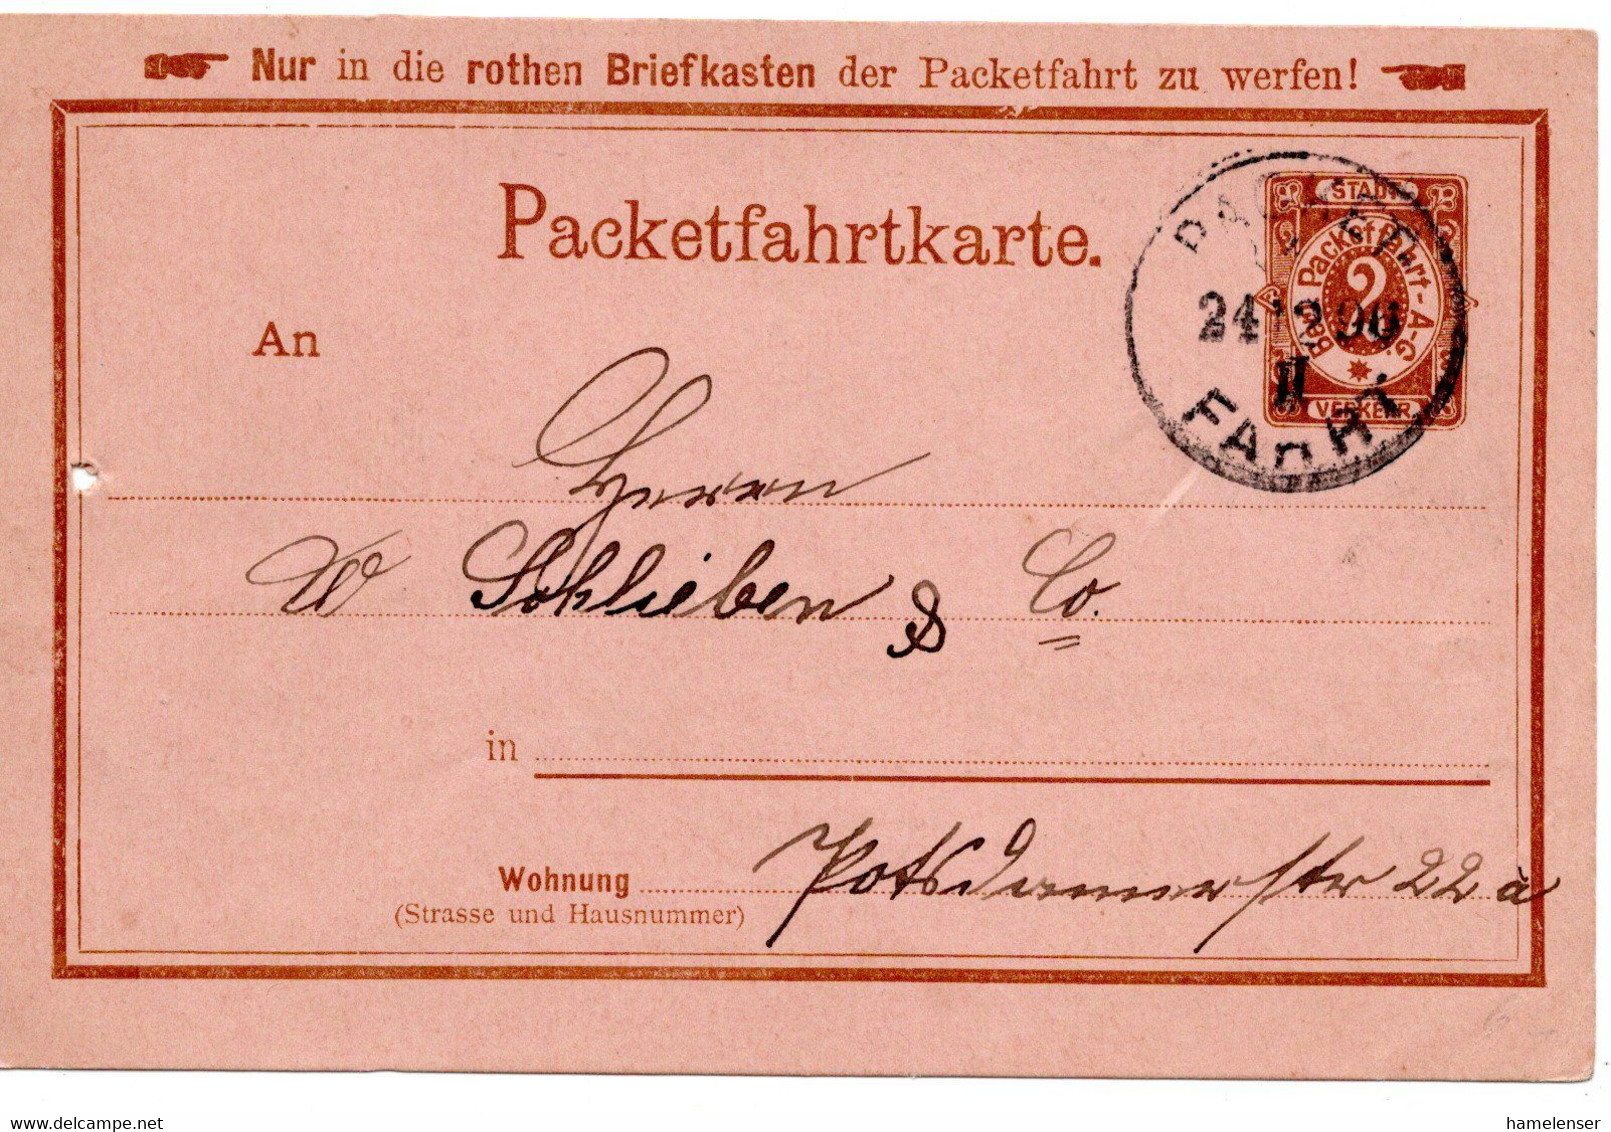 55430 - Deutsches Reich / Berliner Packetfahrt - 1896 - 2Pfg. GAKte. PACKET FAHRT - Postes Privées & Locales